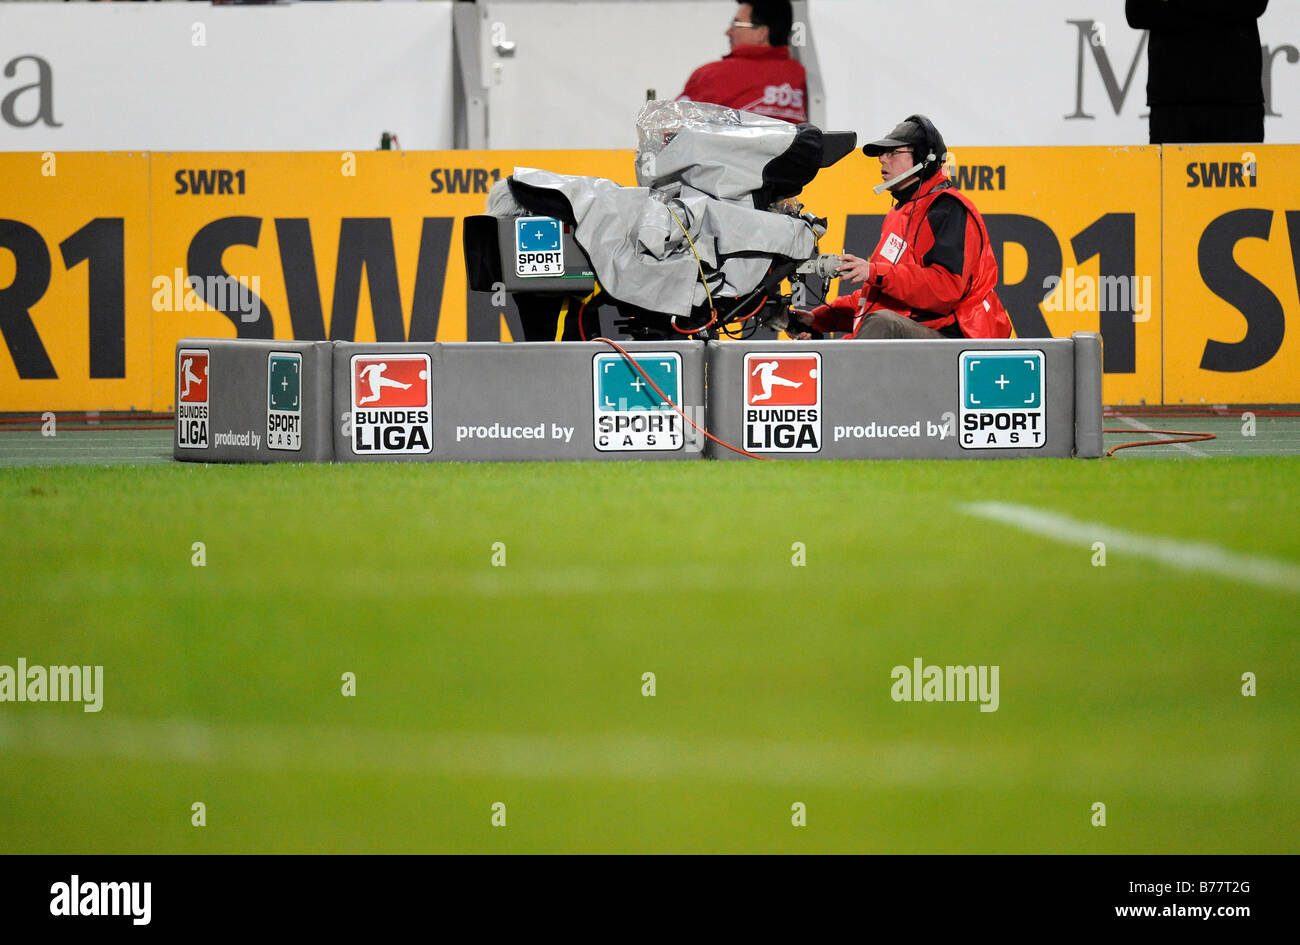 TV-Kamera bei der Übertragung der Bundesliga, Bundesliga Fussball mit  BUNDESLIGA und SPORTCAST-logos Stockfotografie - Alamy